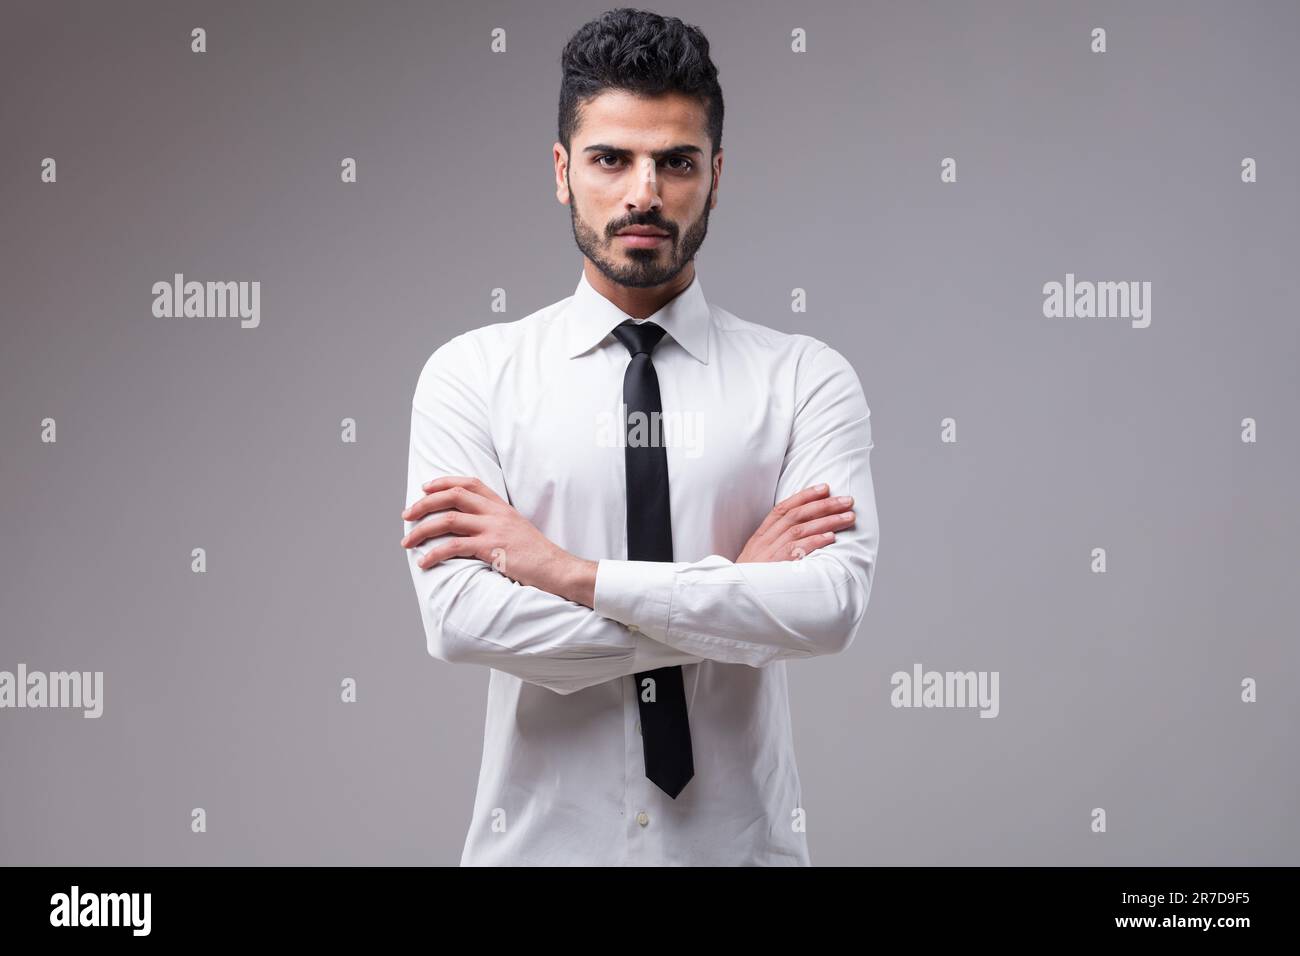 Un uomo d'affari serio e determinato in una camicia bianca, cravatta nera, braccia incrociate. Quasi arrabbiato, la sua carnagione scura e la barba ben curata completano l'hal Foto Stock